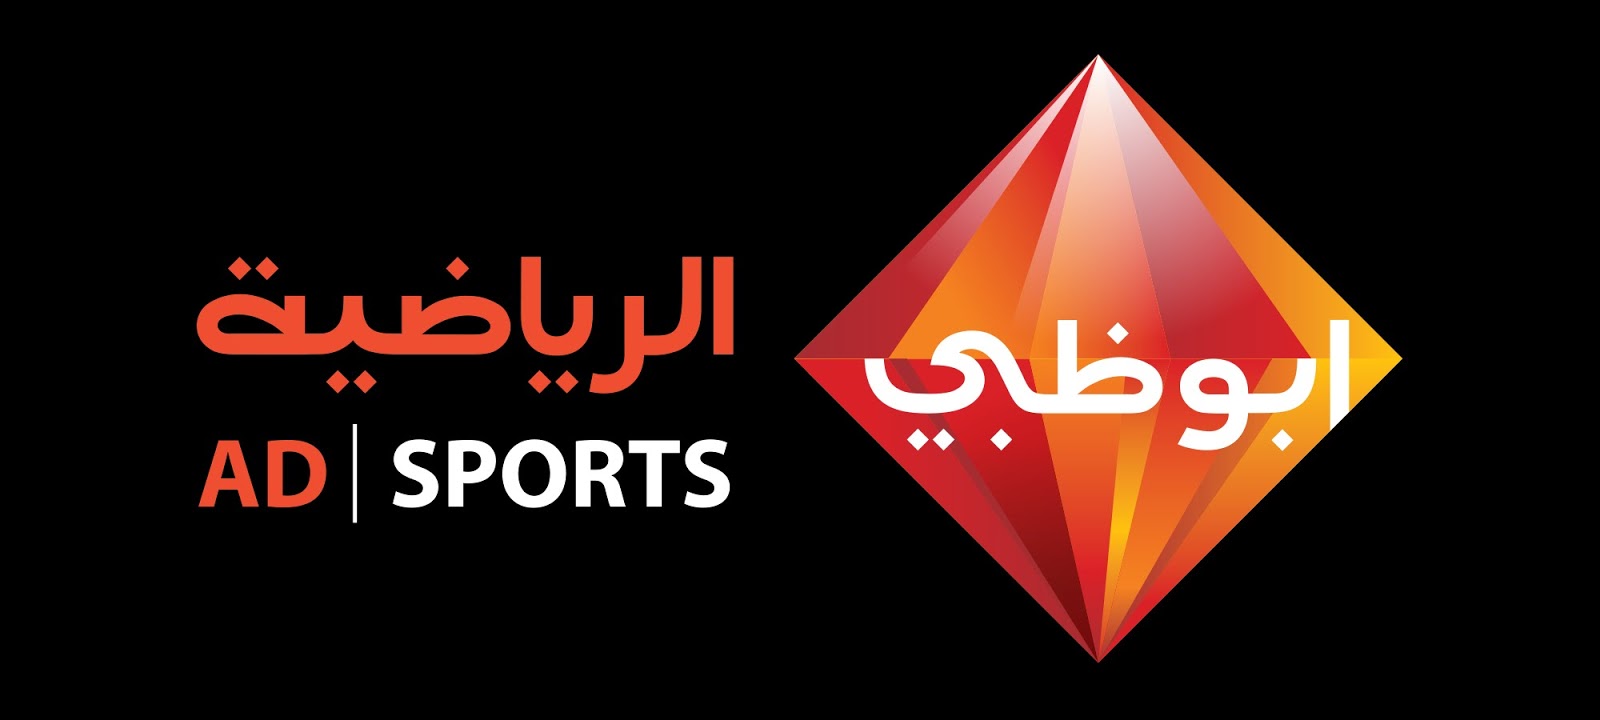 تحميل برنامج ابو ظبي الرياضية ad sport للكمبيوتر 2022